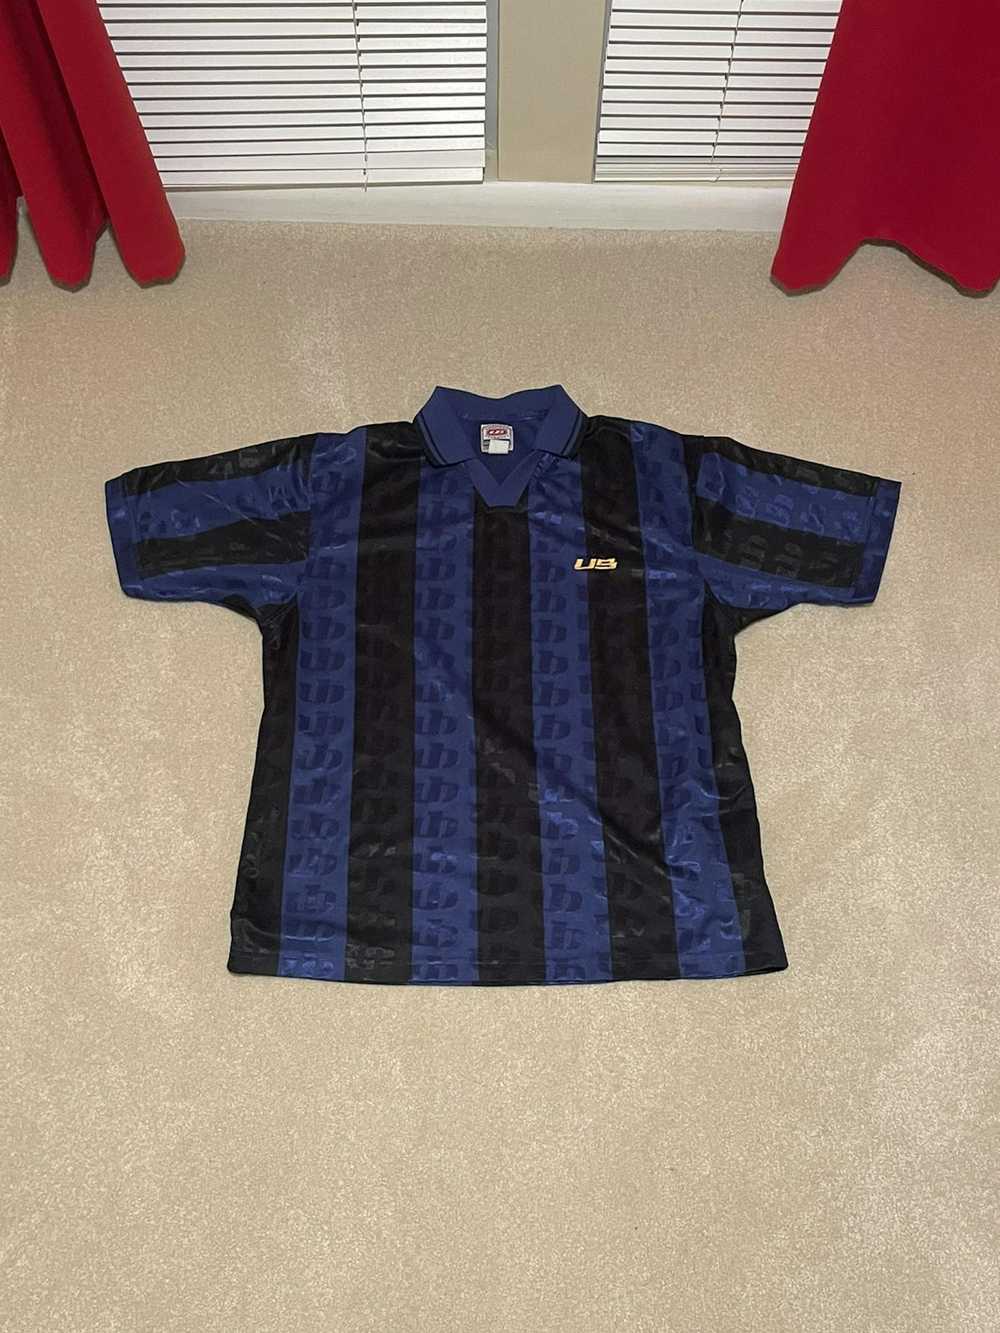 Umbro Vintage Umbro Soccer Jersey - image 1